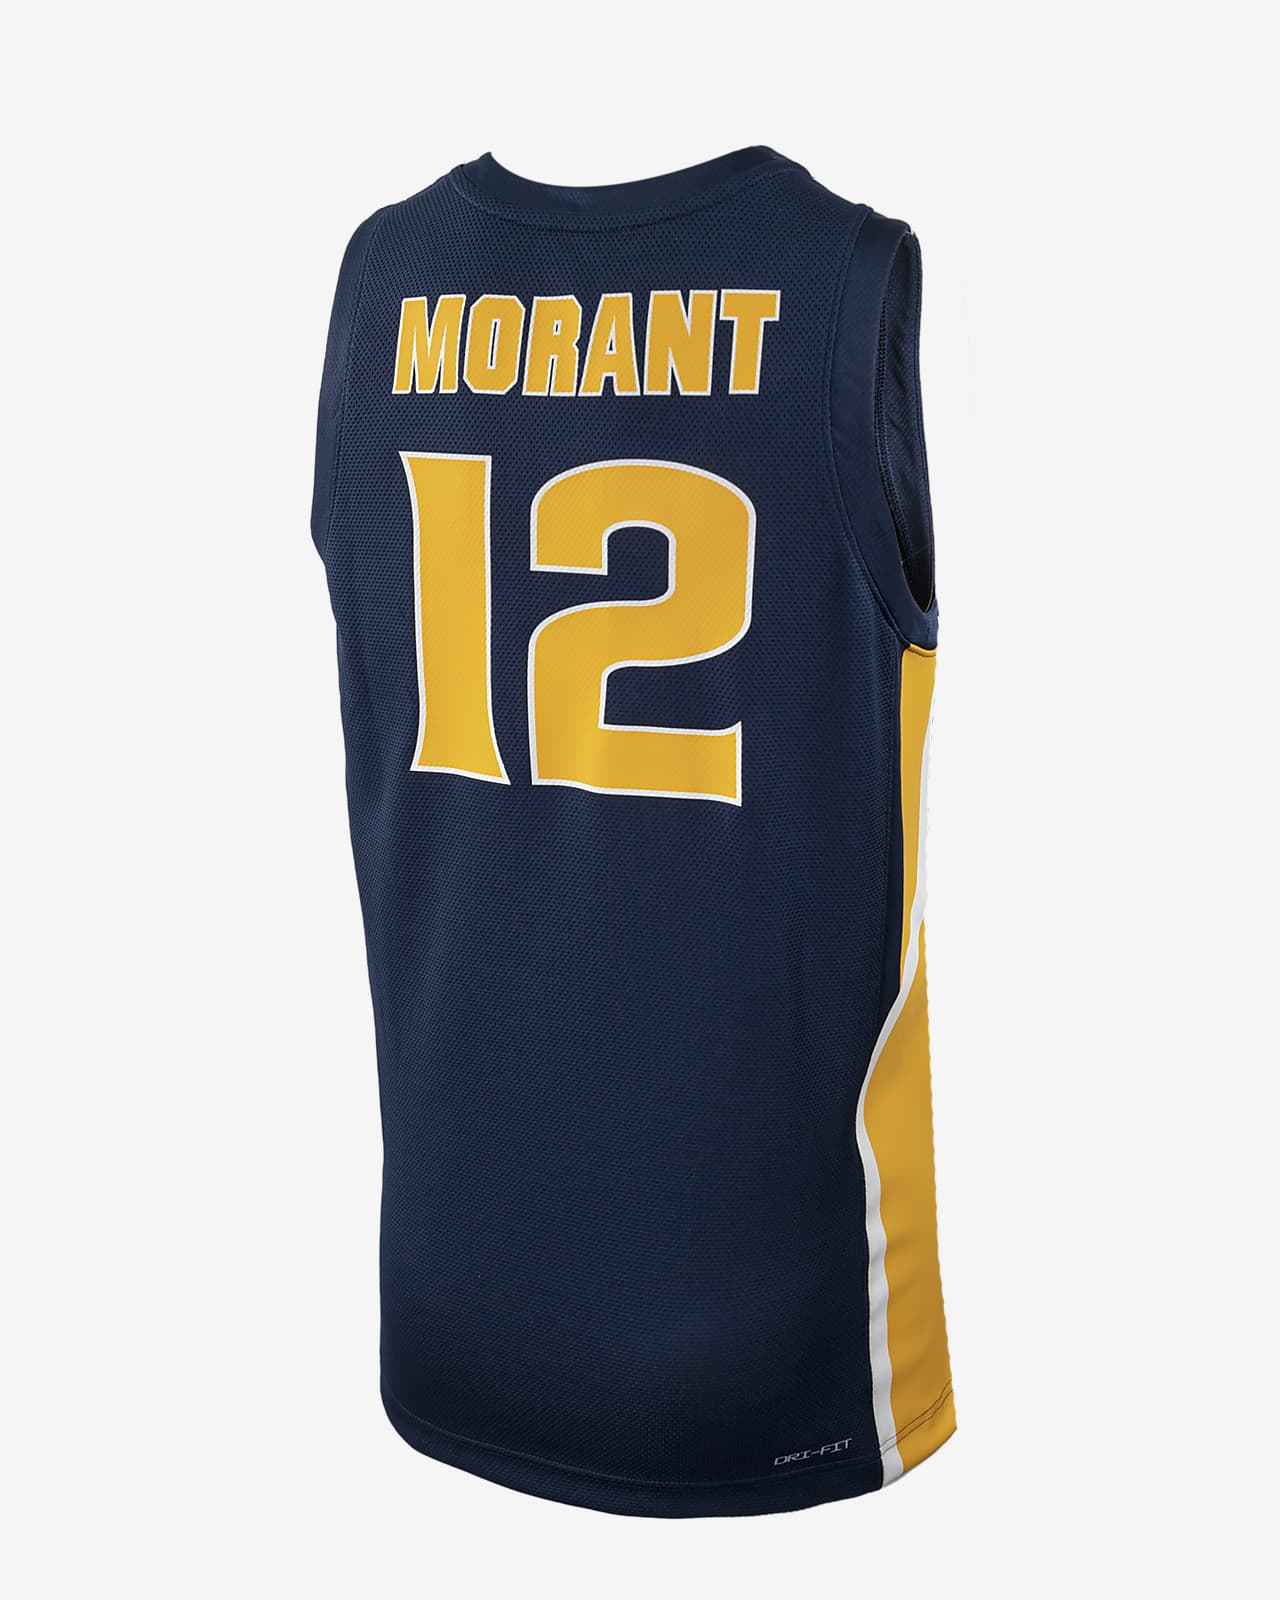 Jersey de Nike College para Morant Murray State. Nike .com